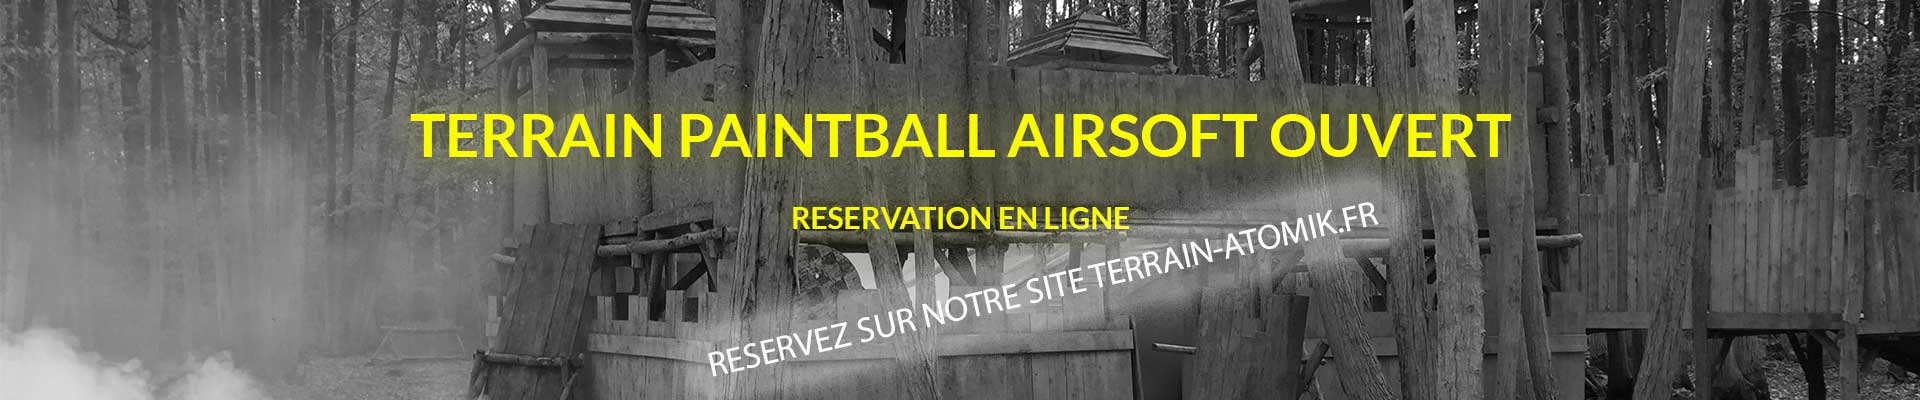 Terrain Paintball Airsoft